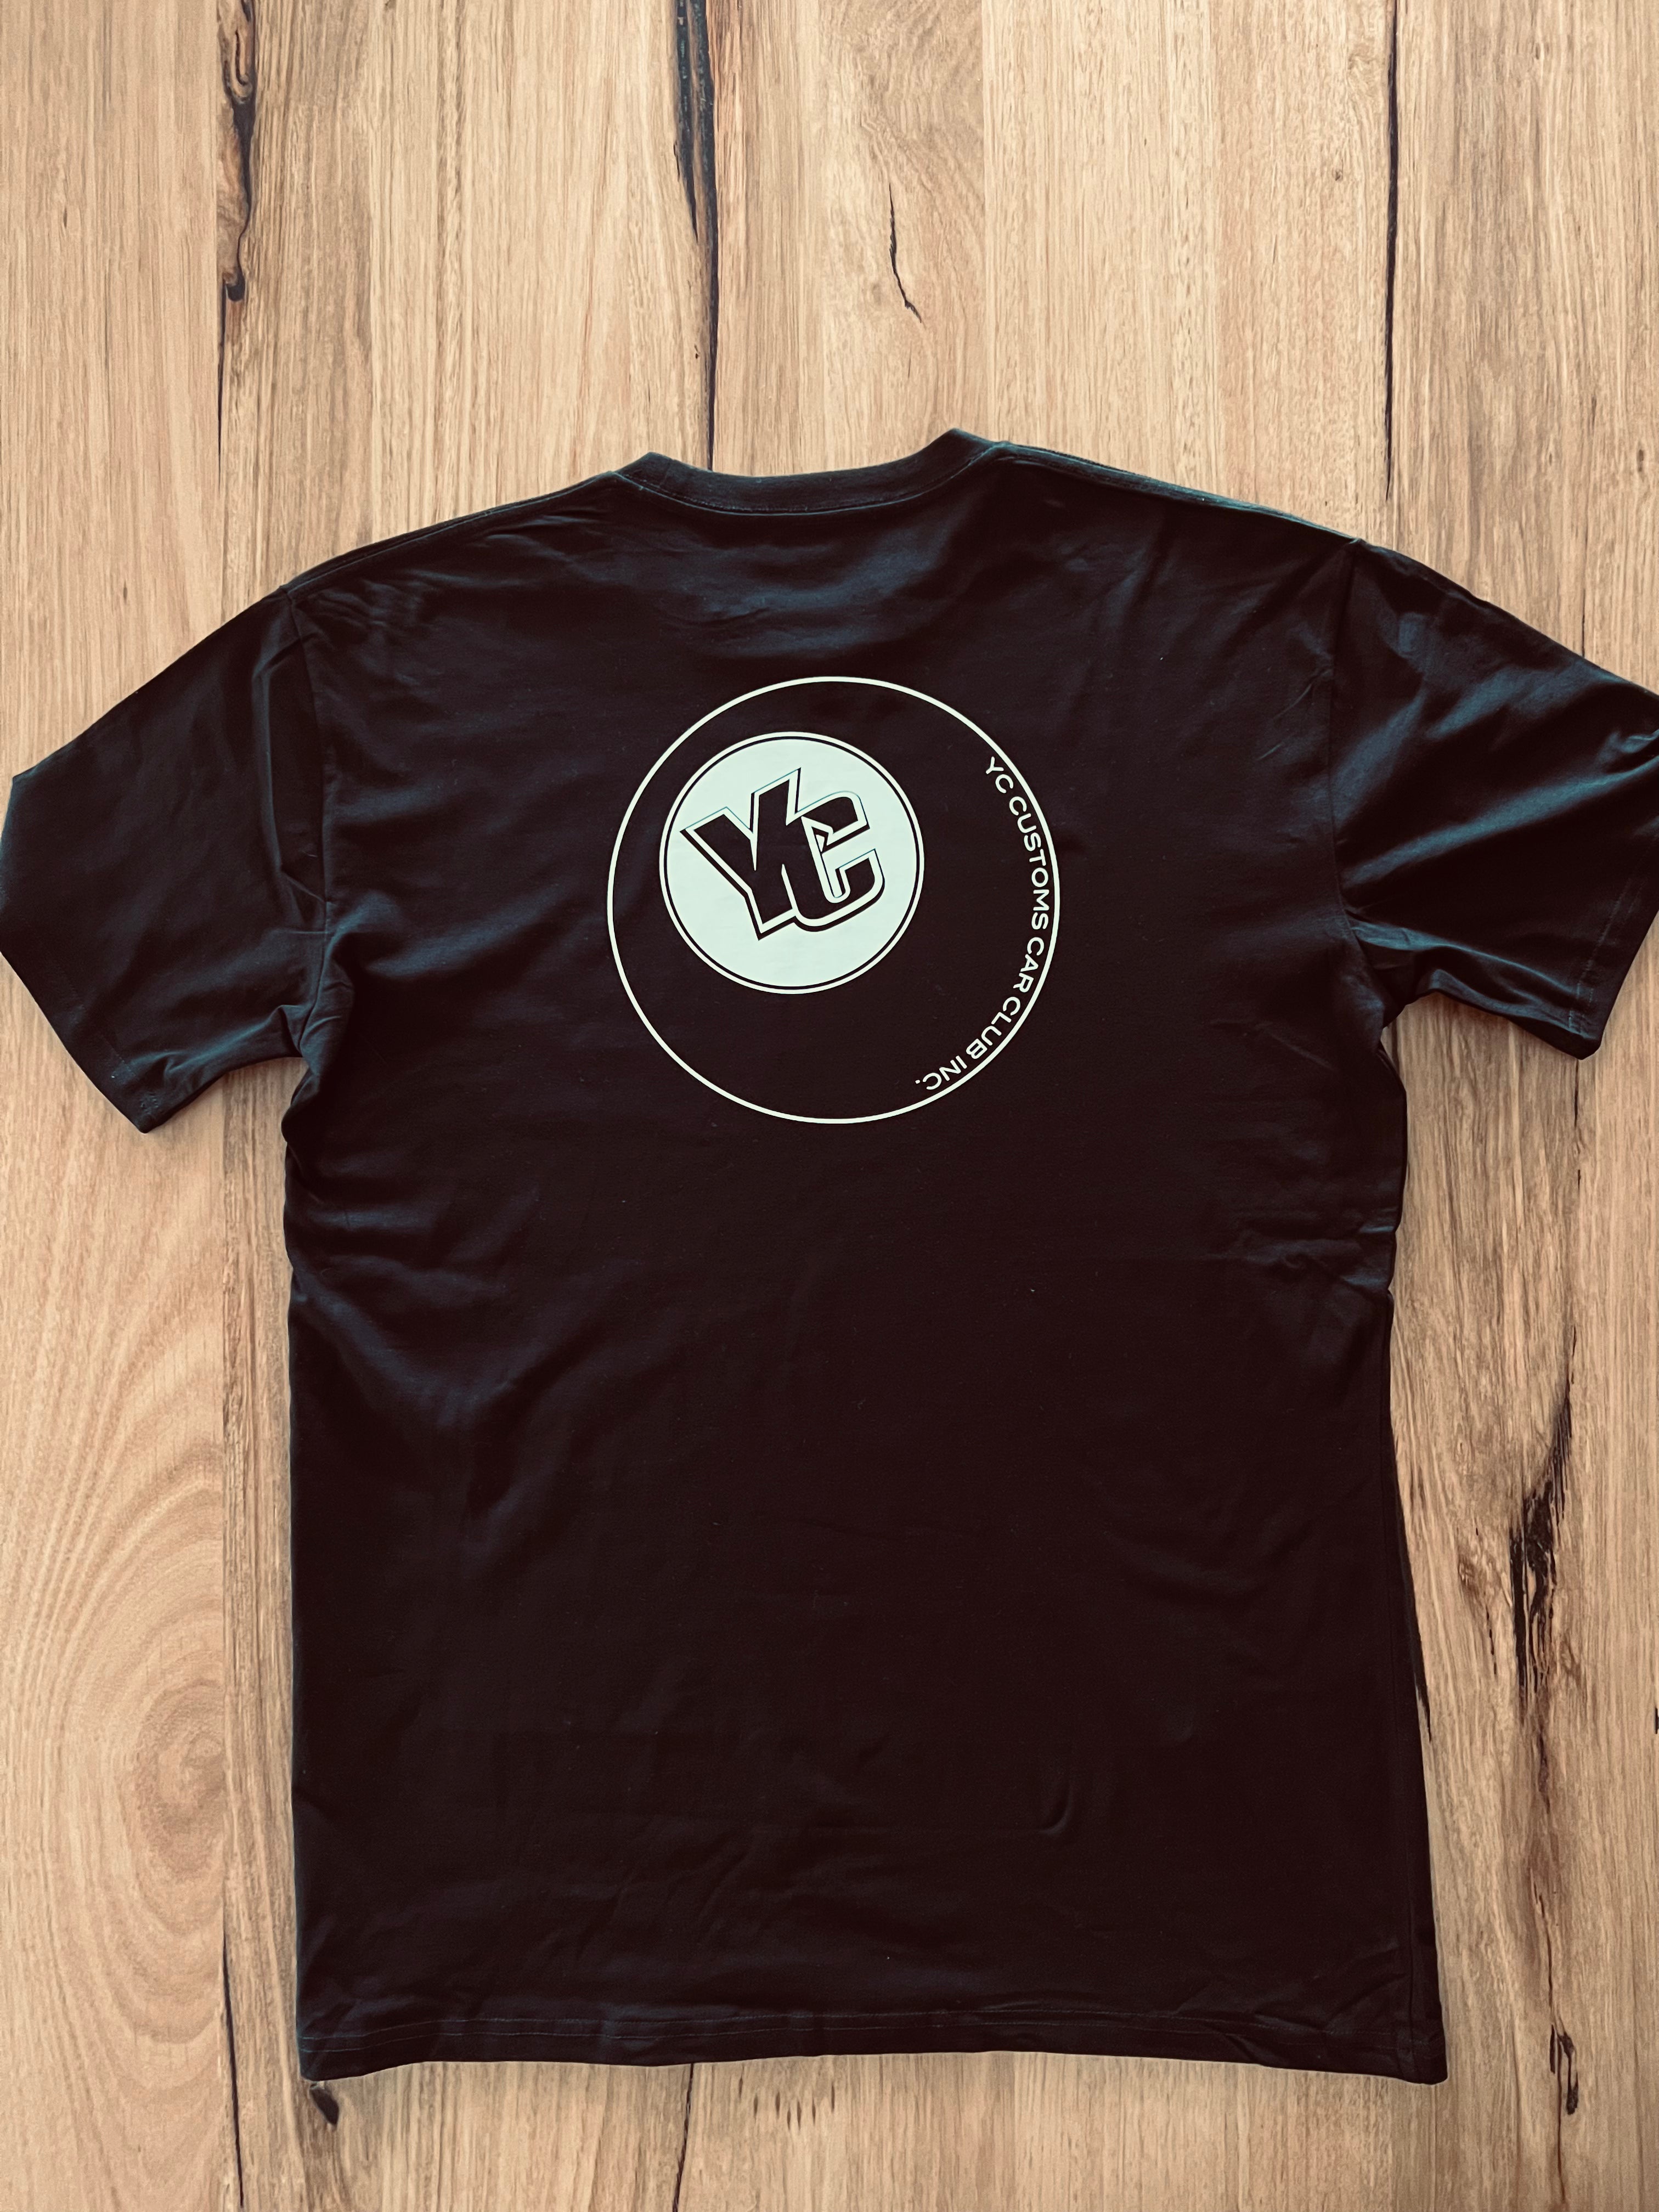 goHARDson YC Customs Car Club club permit reg rego black t-shirt